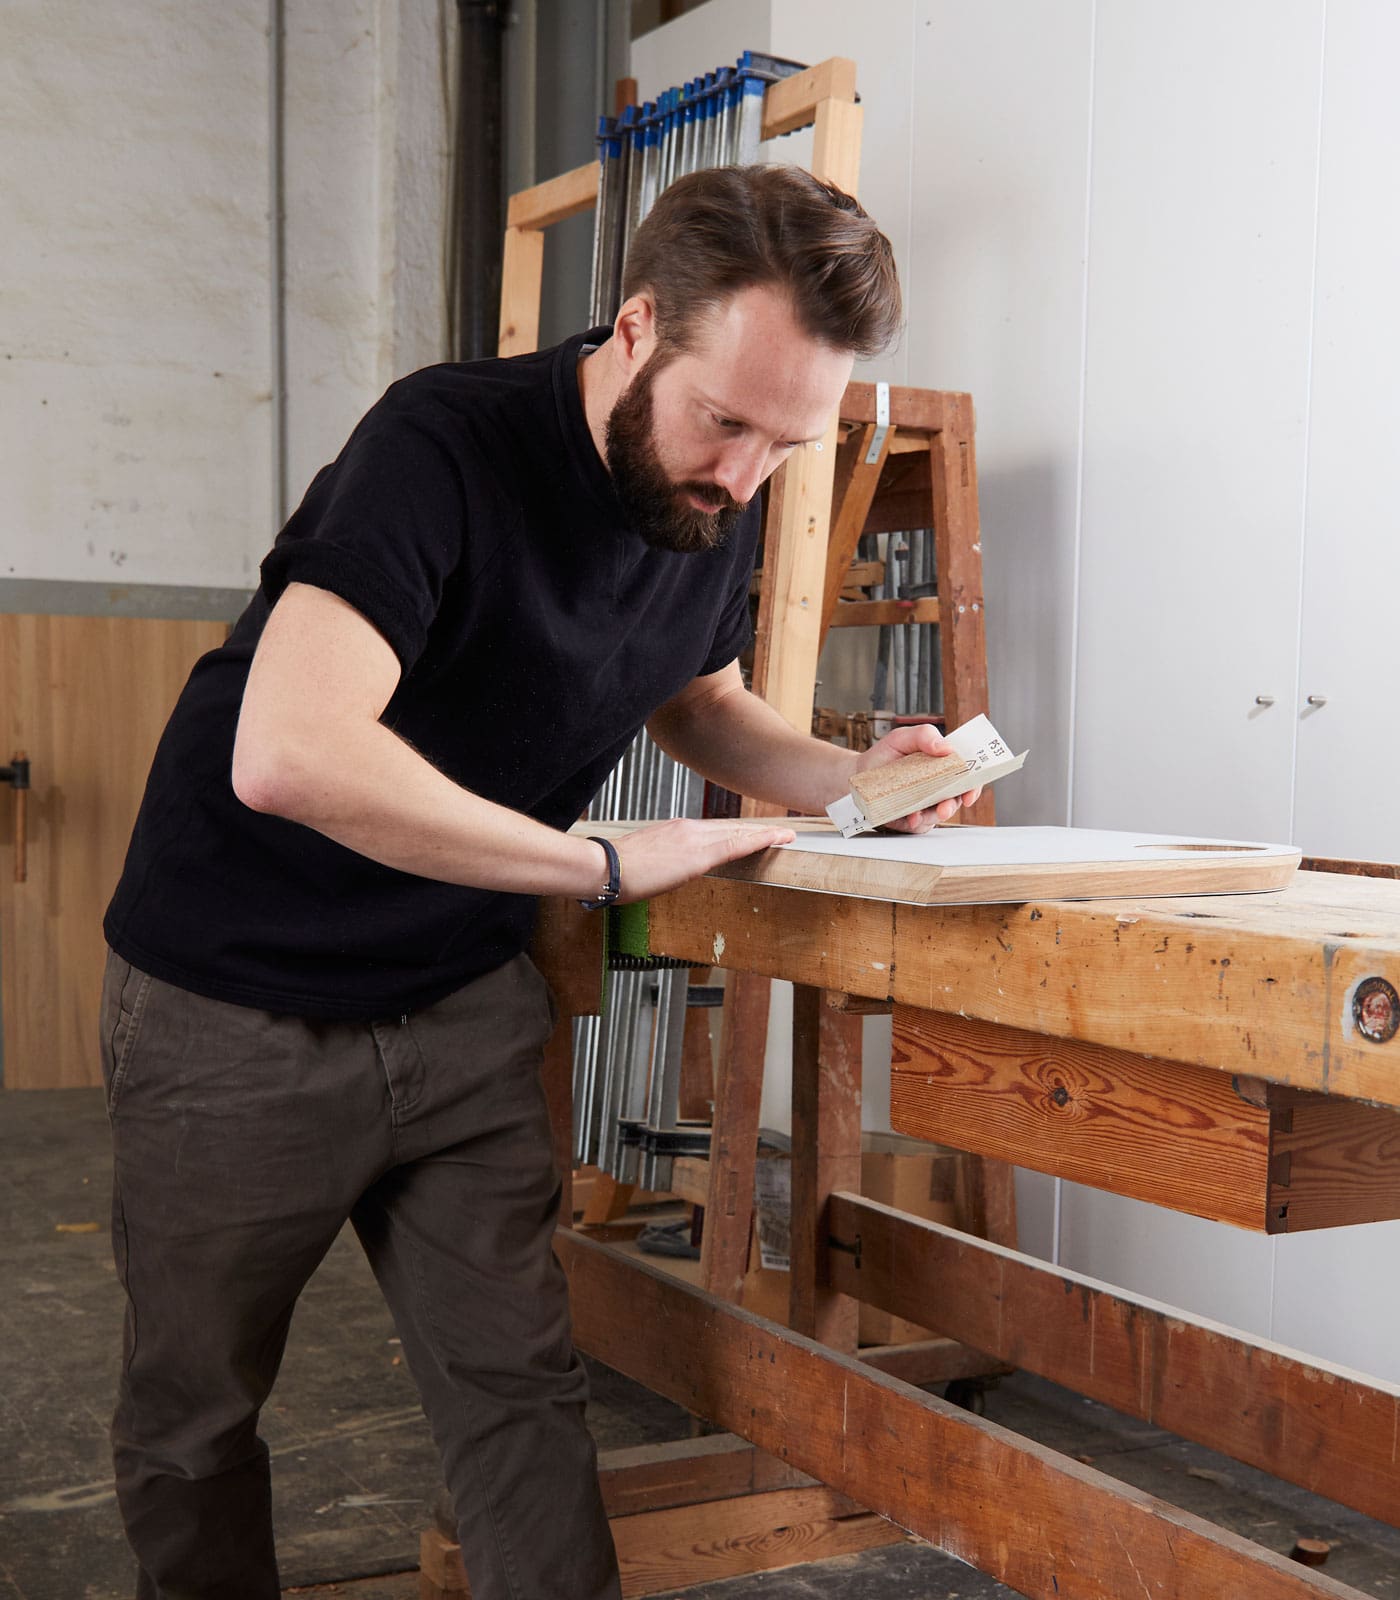 Philip und Lars – Möbelmacher in der Werkstatt // HIMBEER